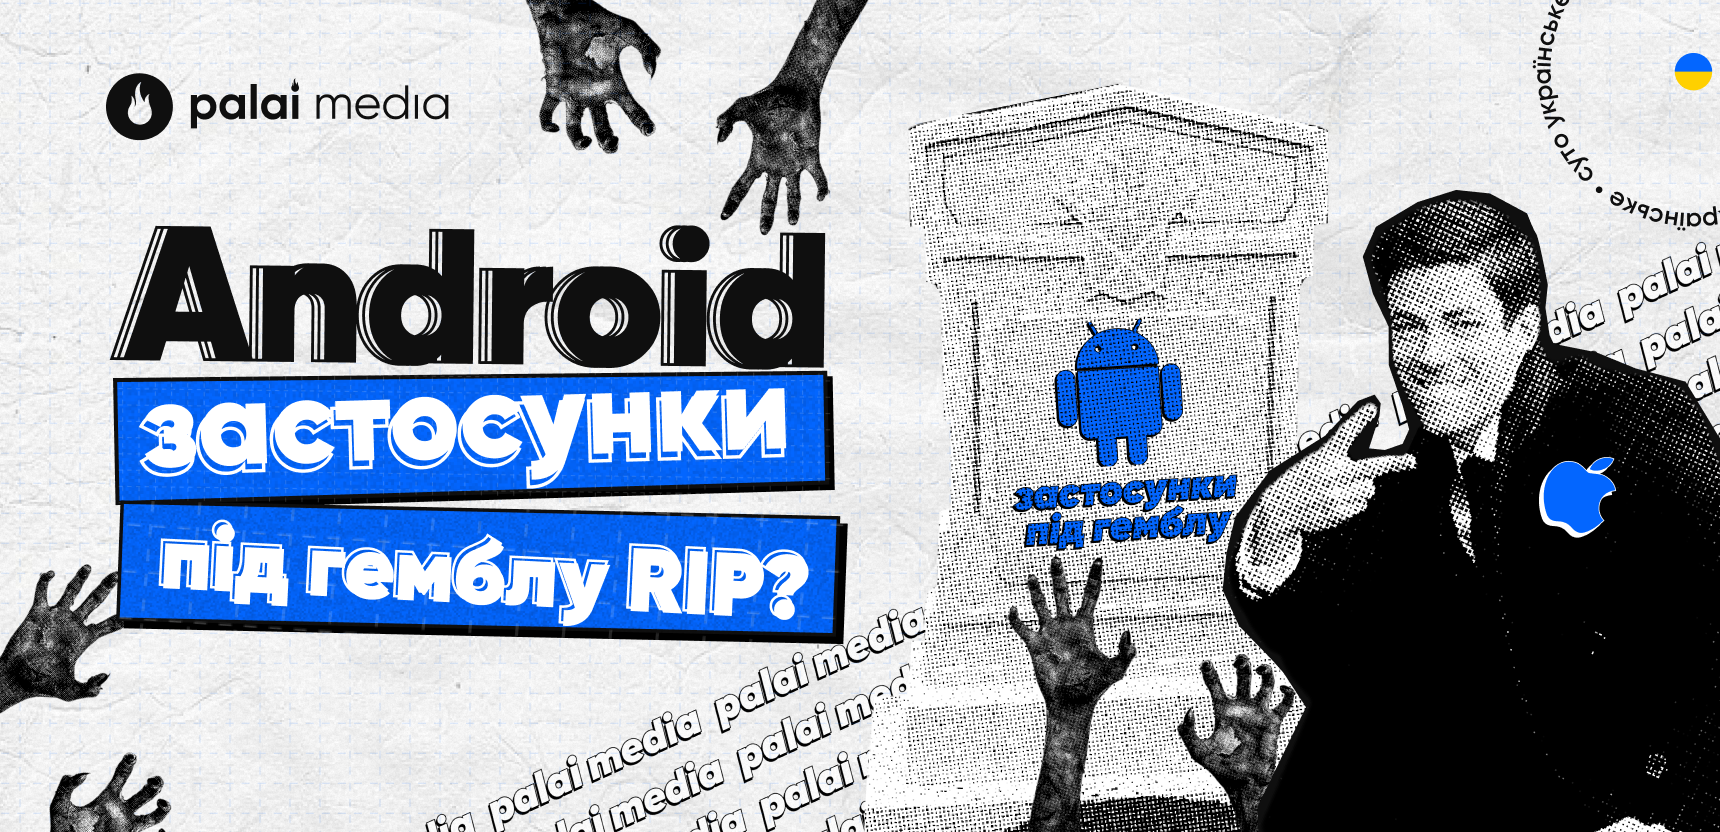 Android застосунки під гемблу RIP?